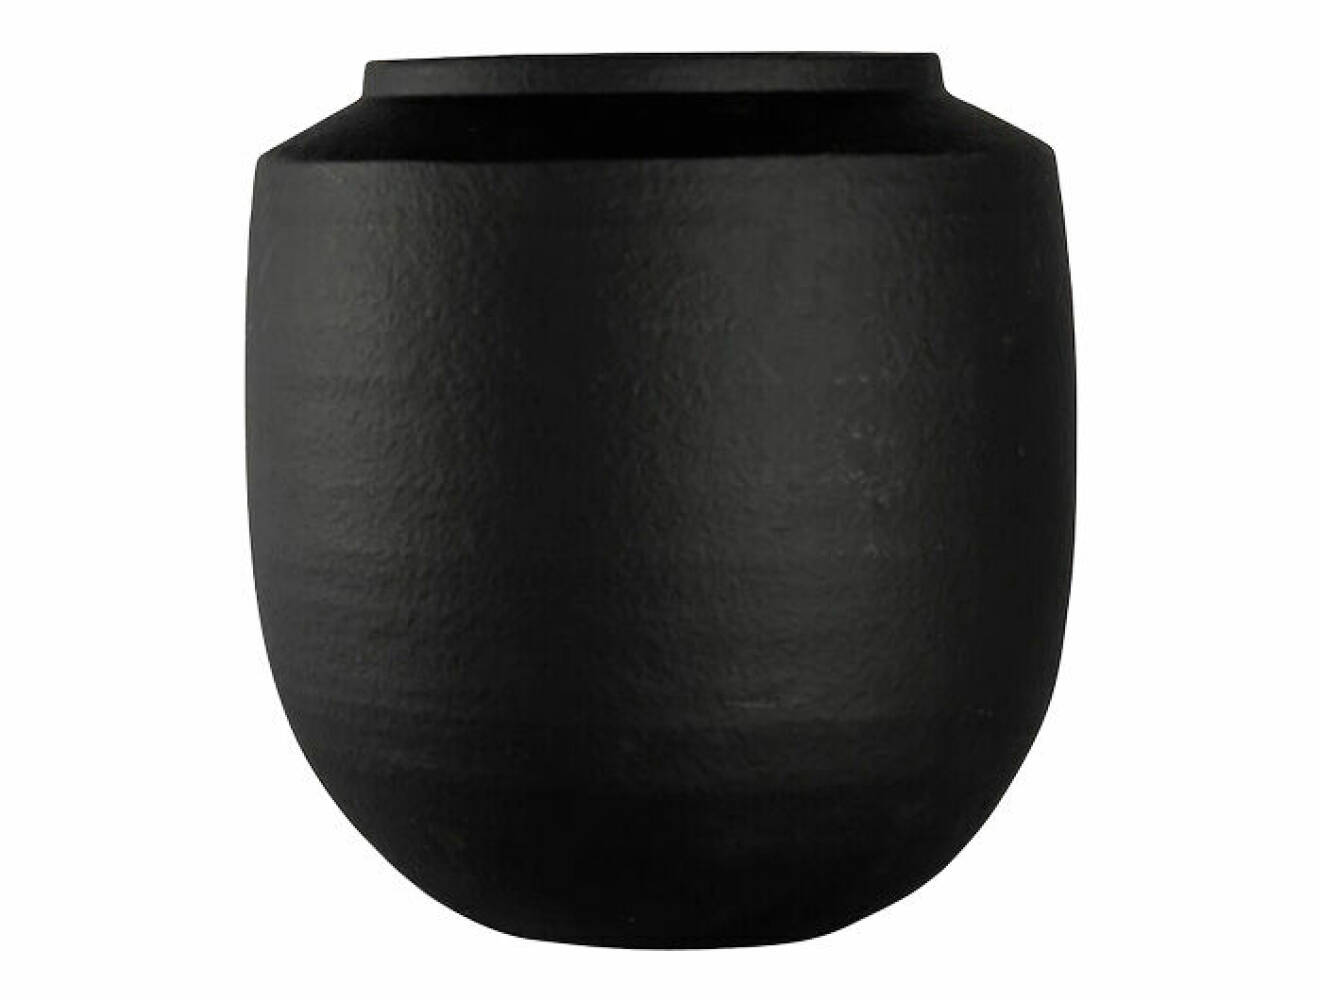 svart kruka med rund form gjord i terracotta från ByON